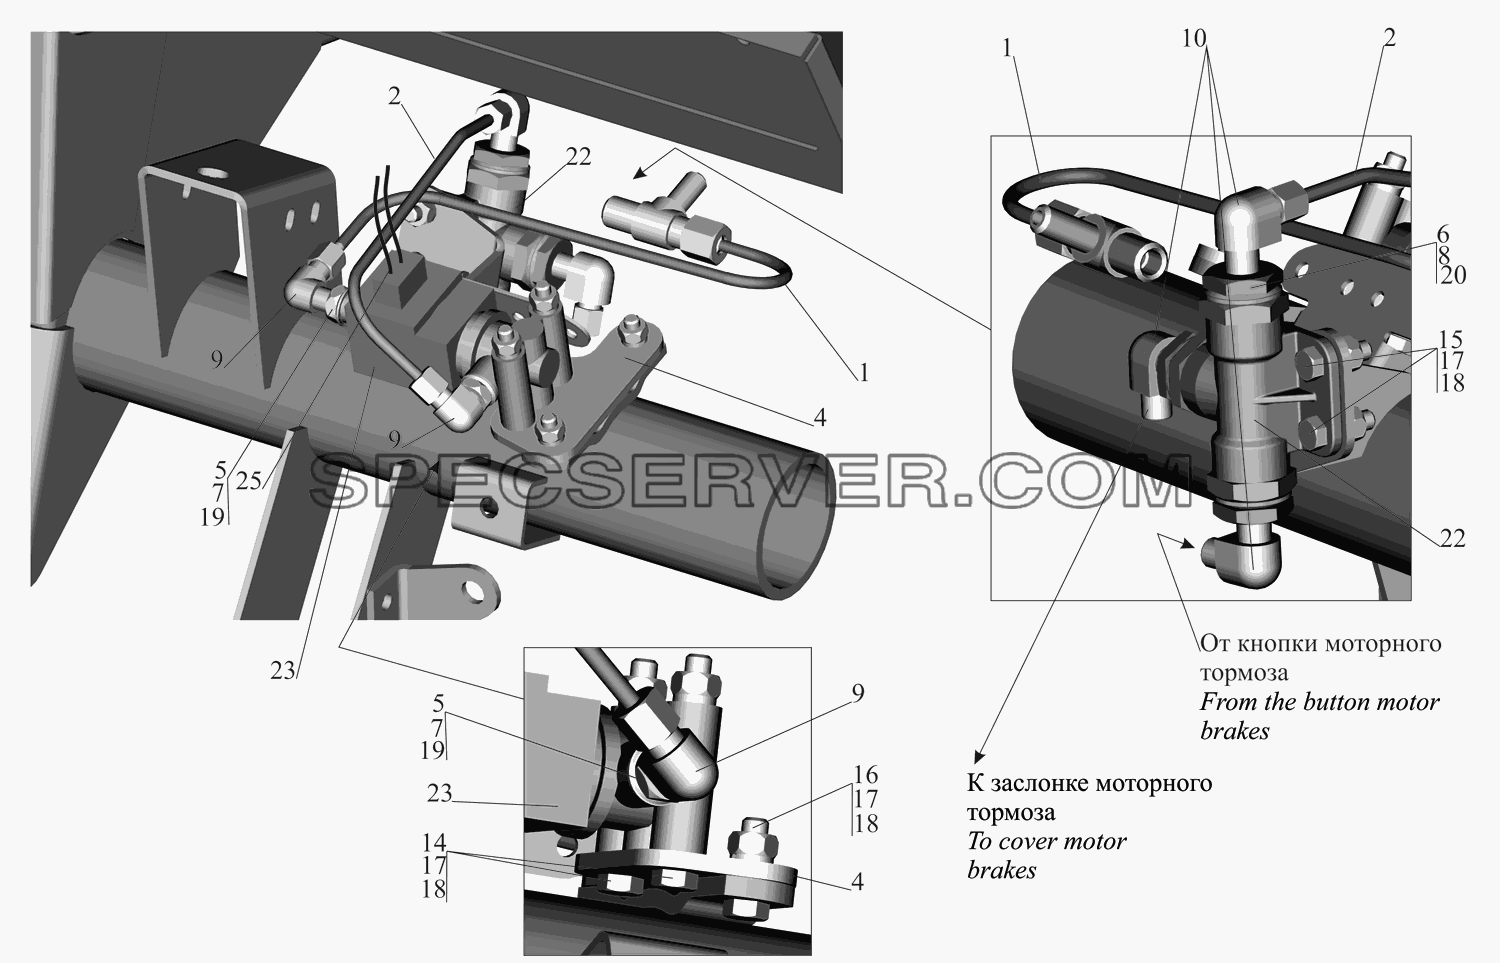 Привод выключения двигателя 551605-1115004-700 для МАЗ-631705 (список запасных частей)